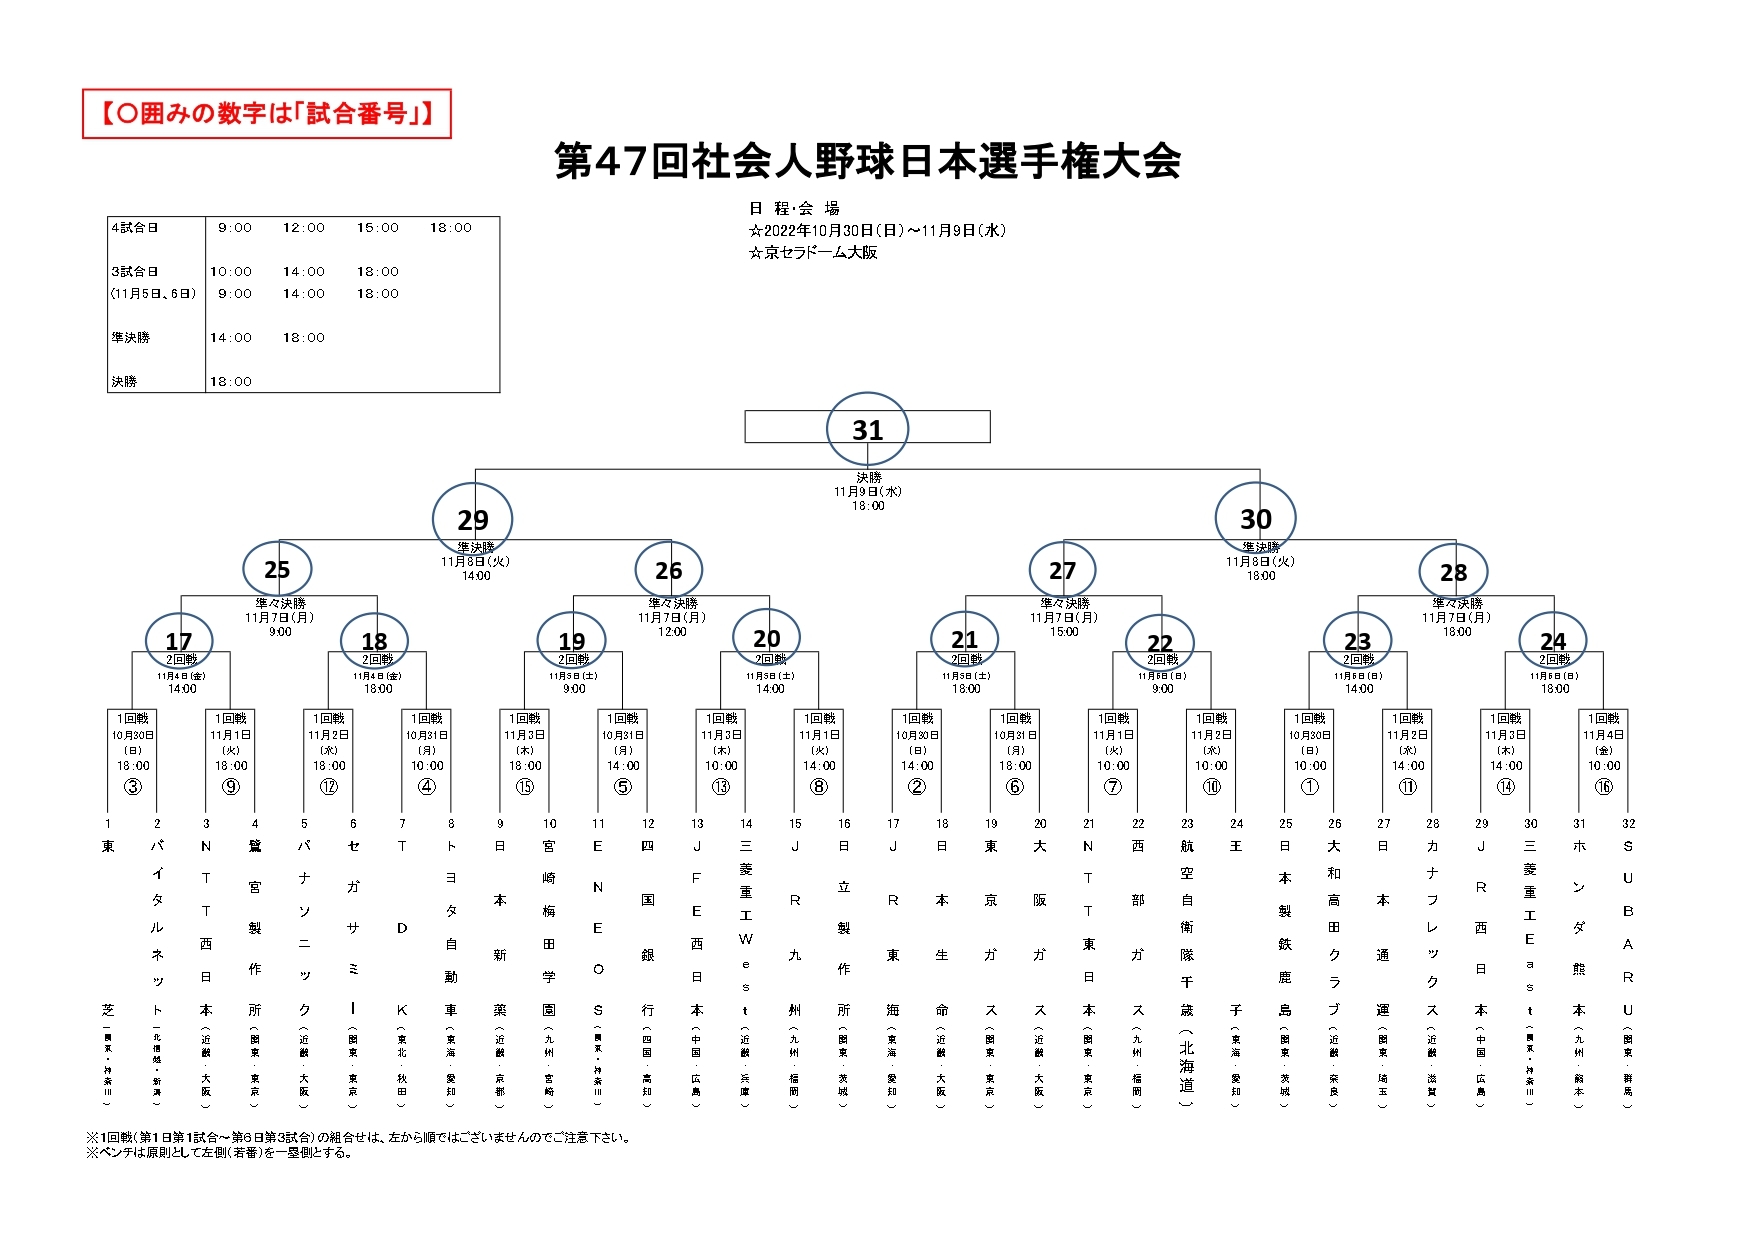 『第47回社会人野球日本選手権大会』の組み合わせ表